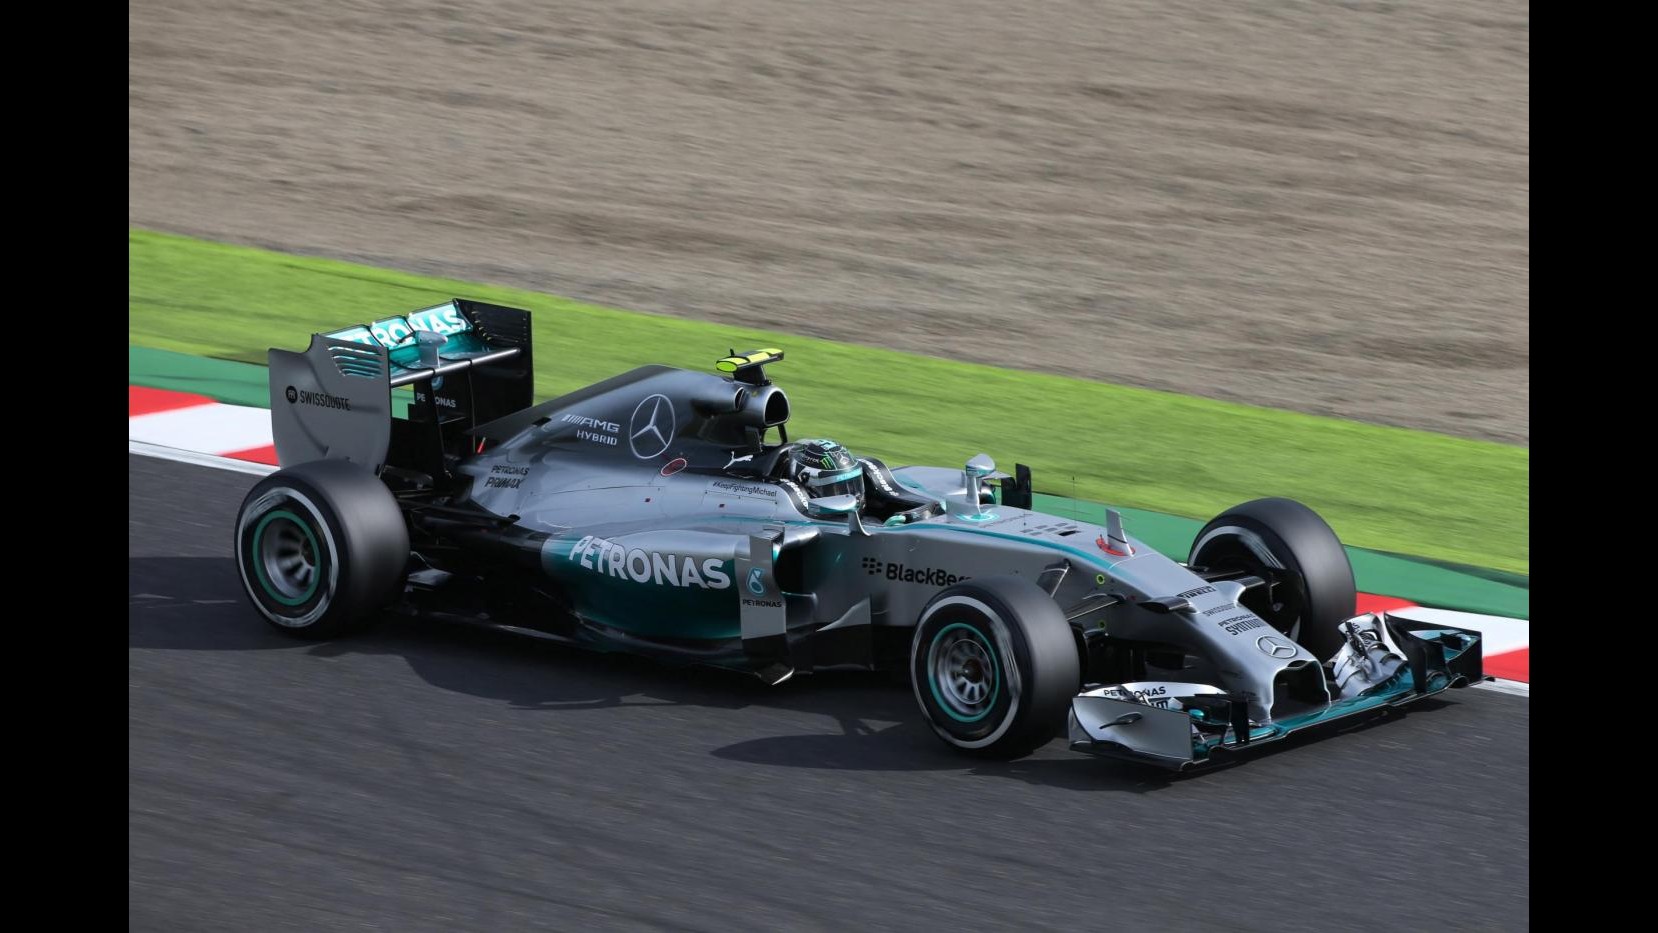 F1, Gp Russia: Rosberg al comando in prime libere davanti a Hamilton, 4° Alonso